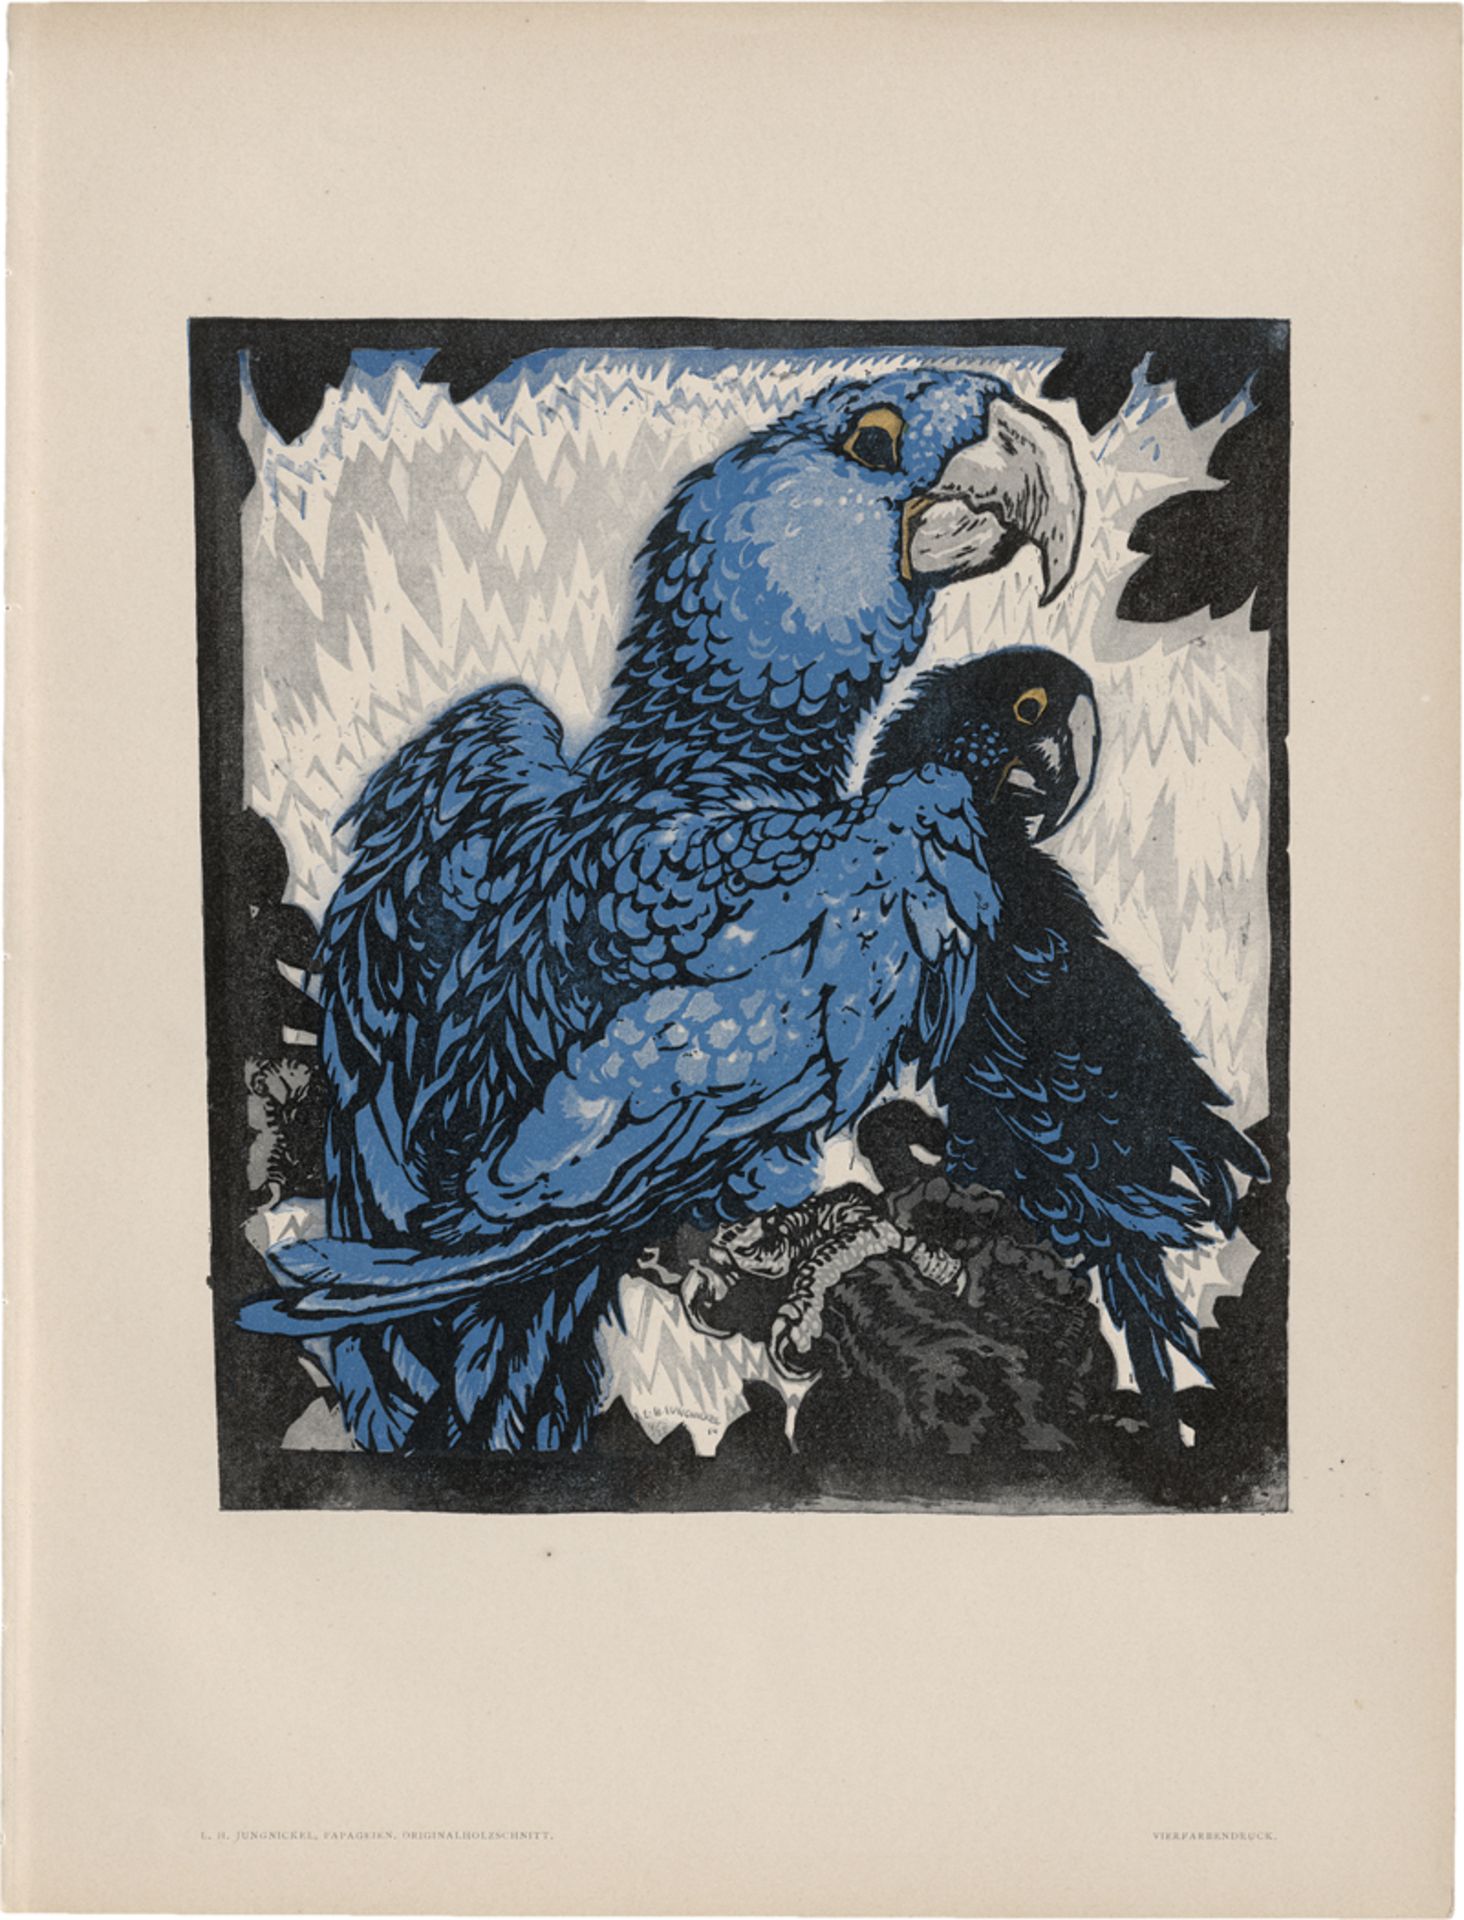 Jungnickel, Ludwig H.: Papageien